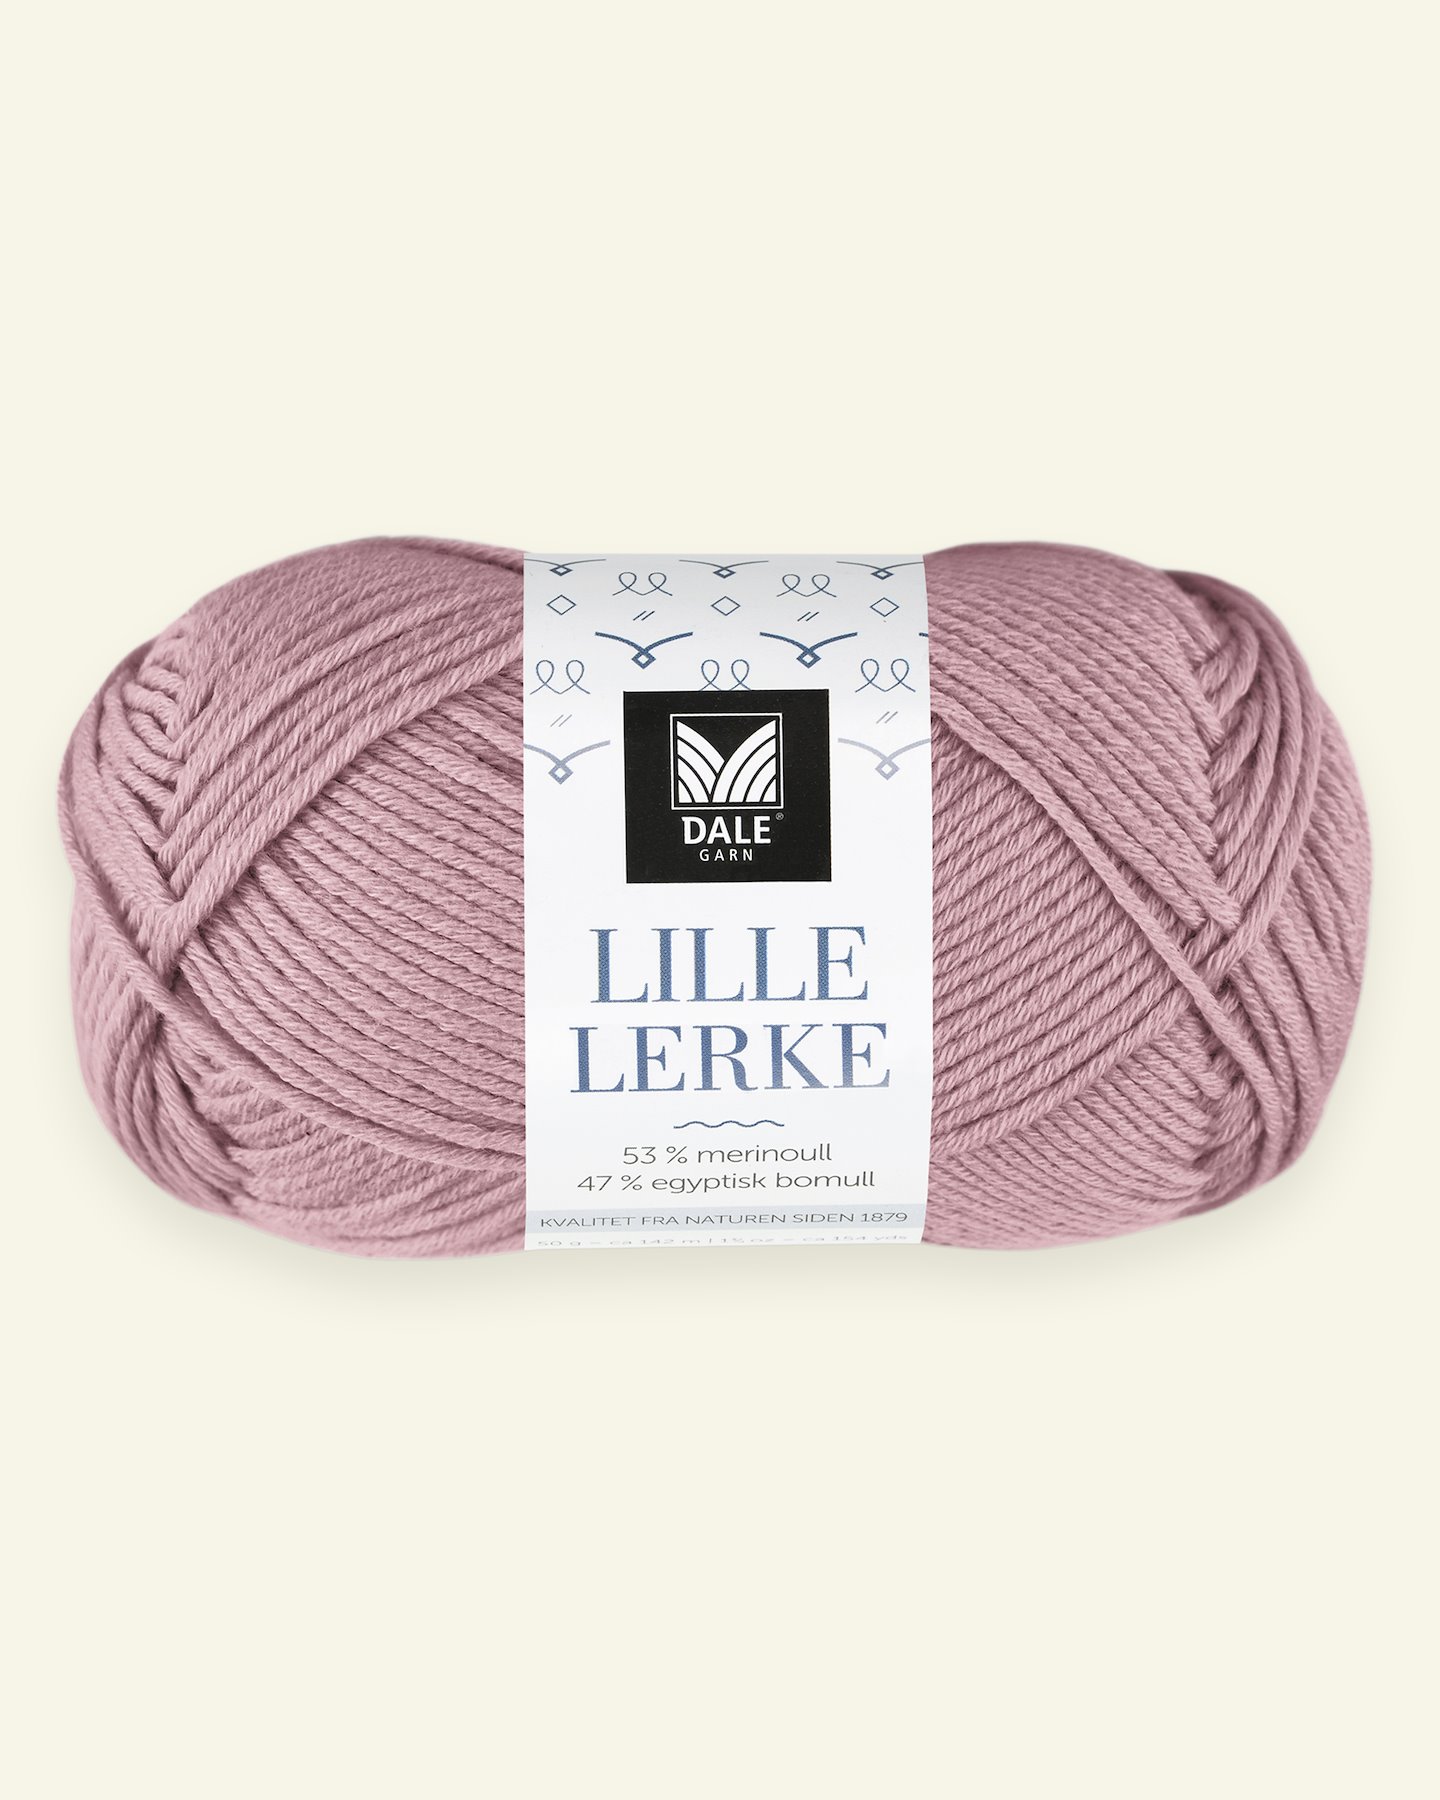 Dale Garn, merino/cotton yarn "Lille Lerke", old rose (8123) 90000413_pack